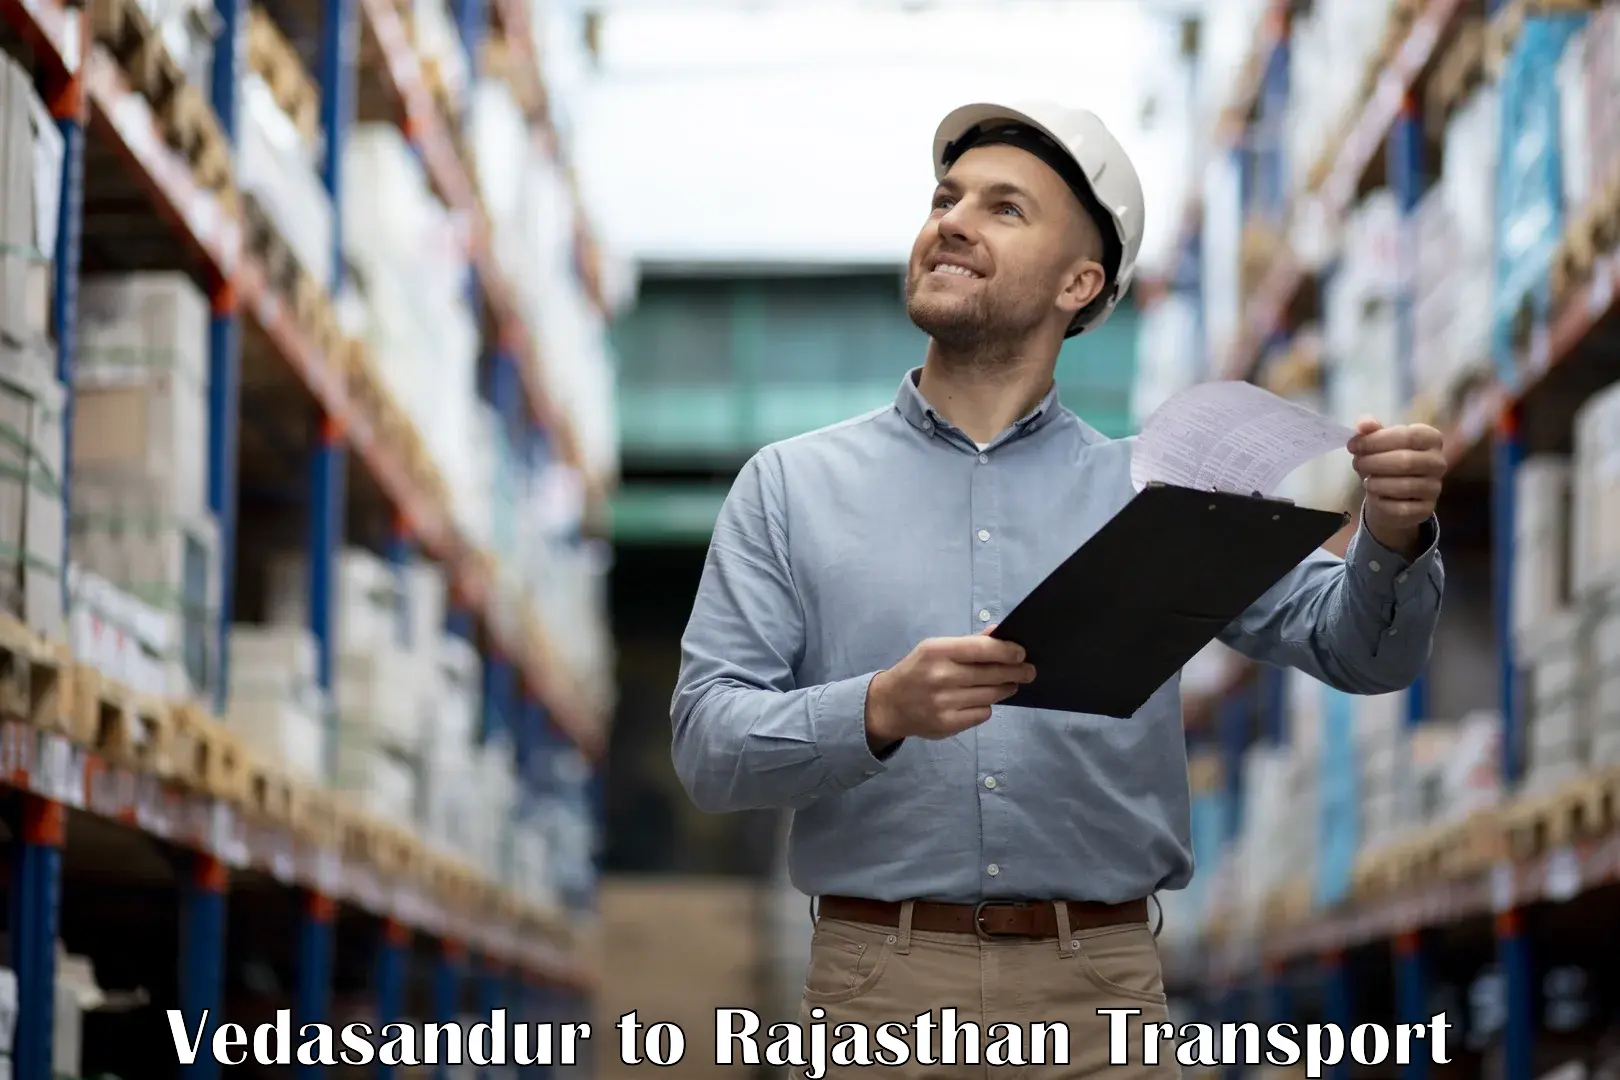 Goods delivery service Vedasandur to Sardarshahr